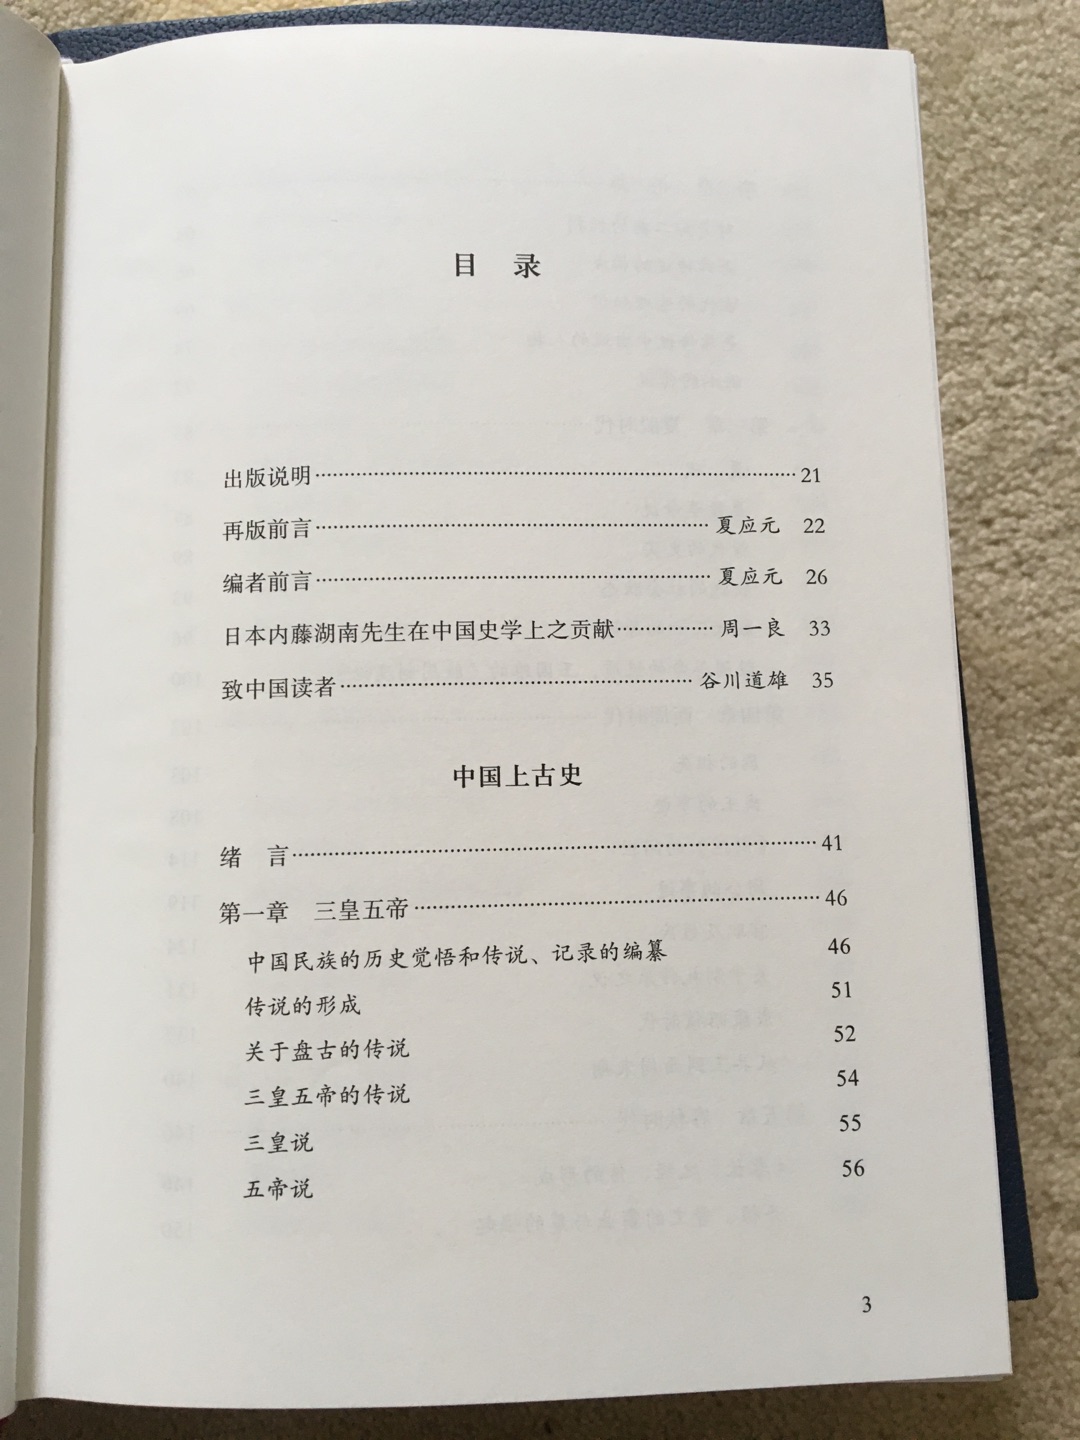 内藤湖南日本中国史大家，看过他的弟子宫崎市定的书，所以也买来拜读一下。保护壳挺硬，书本质量也不错，价格小贵。